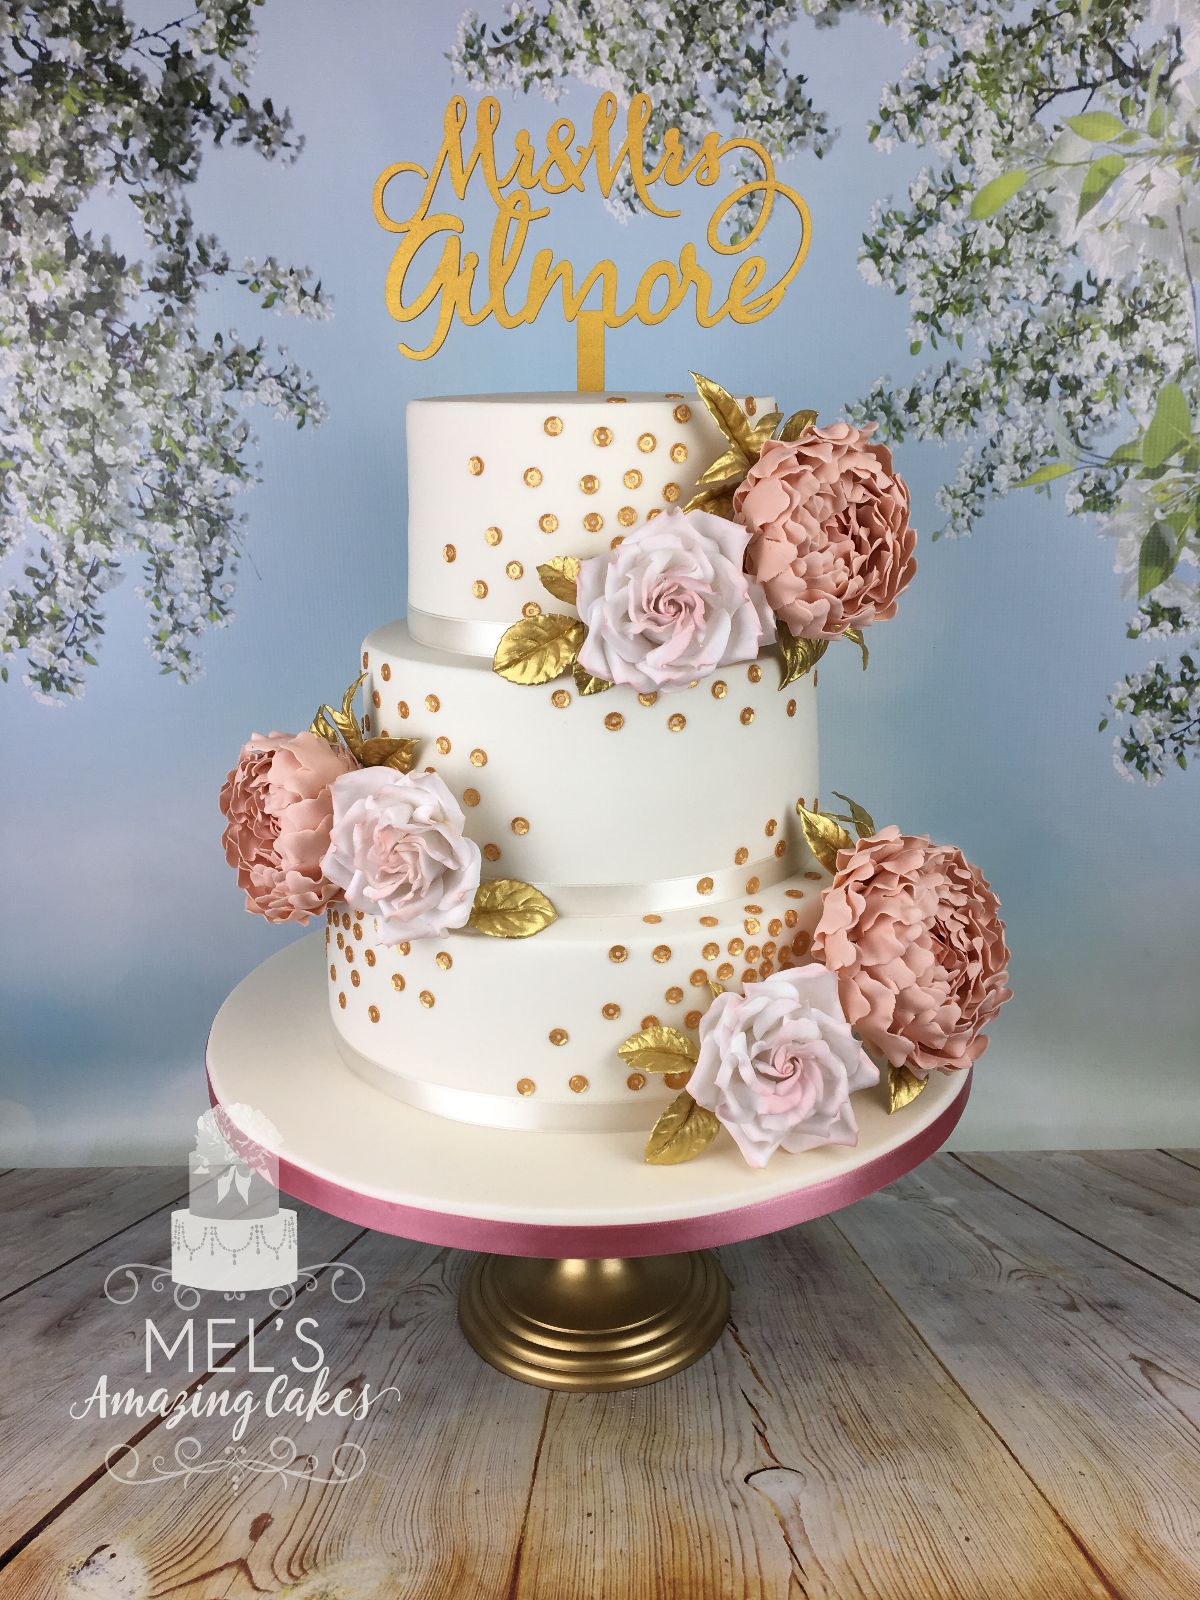 Mel's Amazing Cakes-Image-140